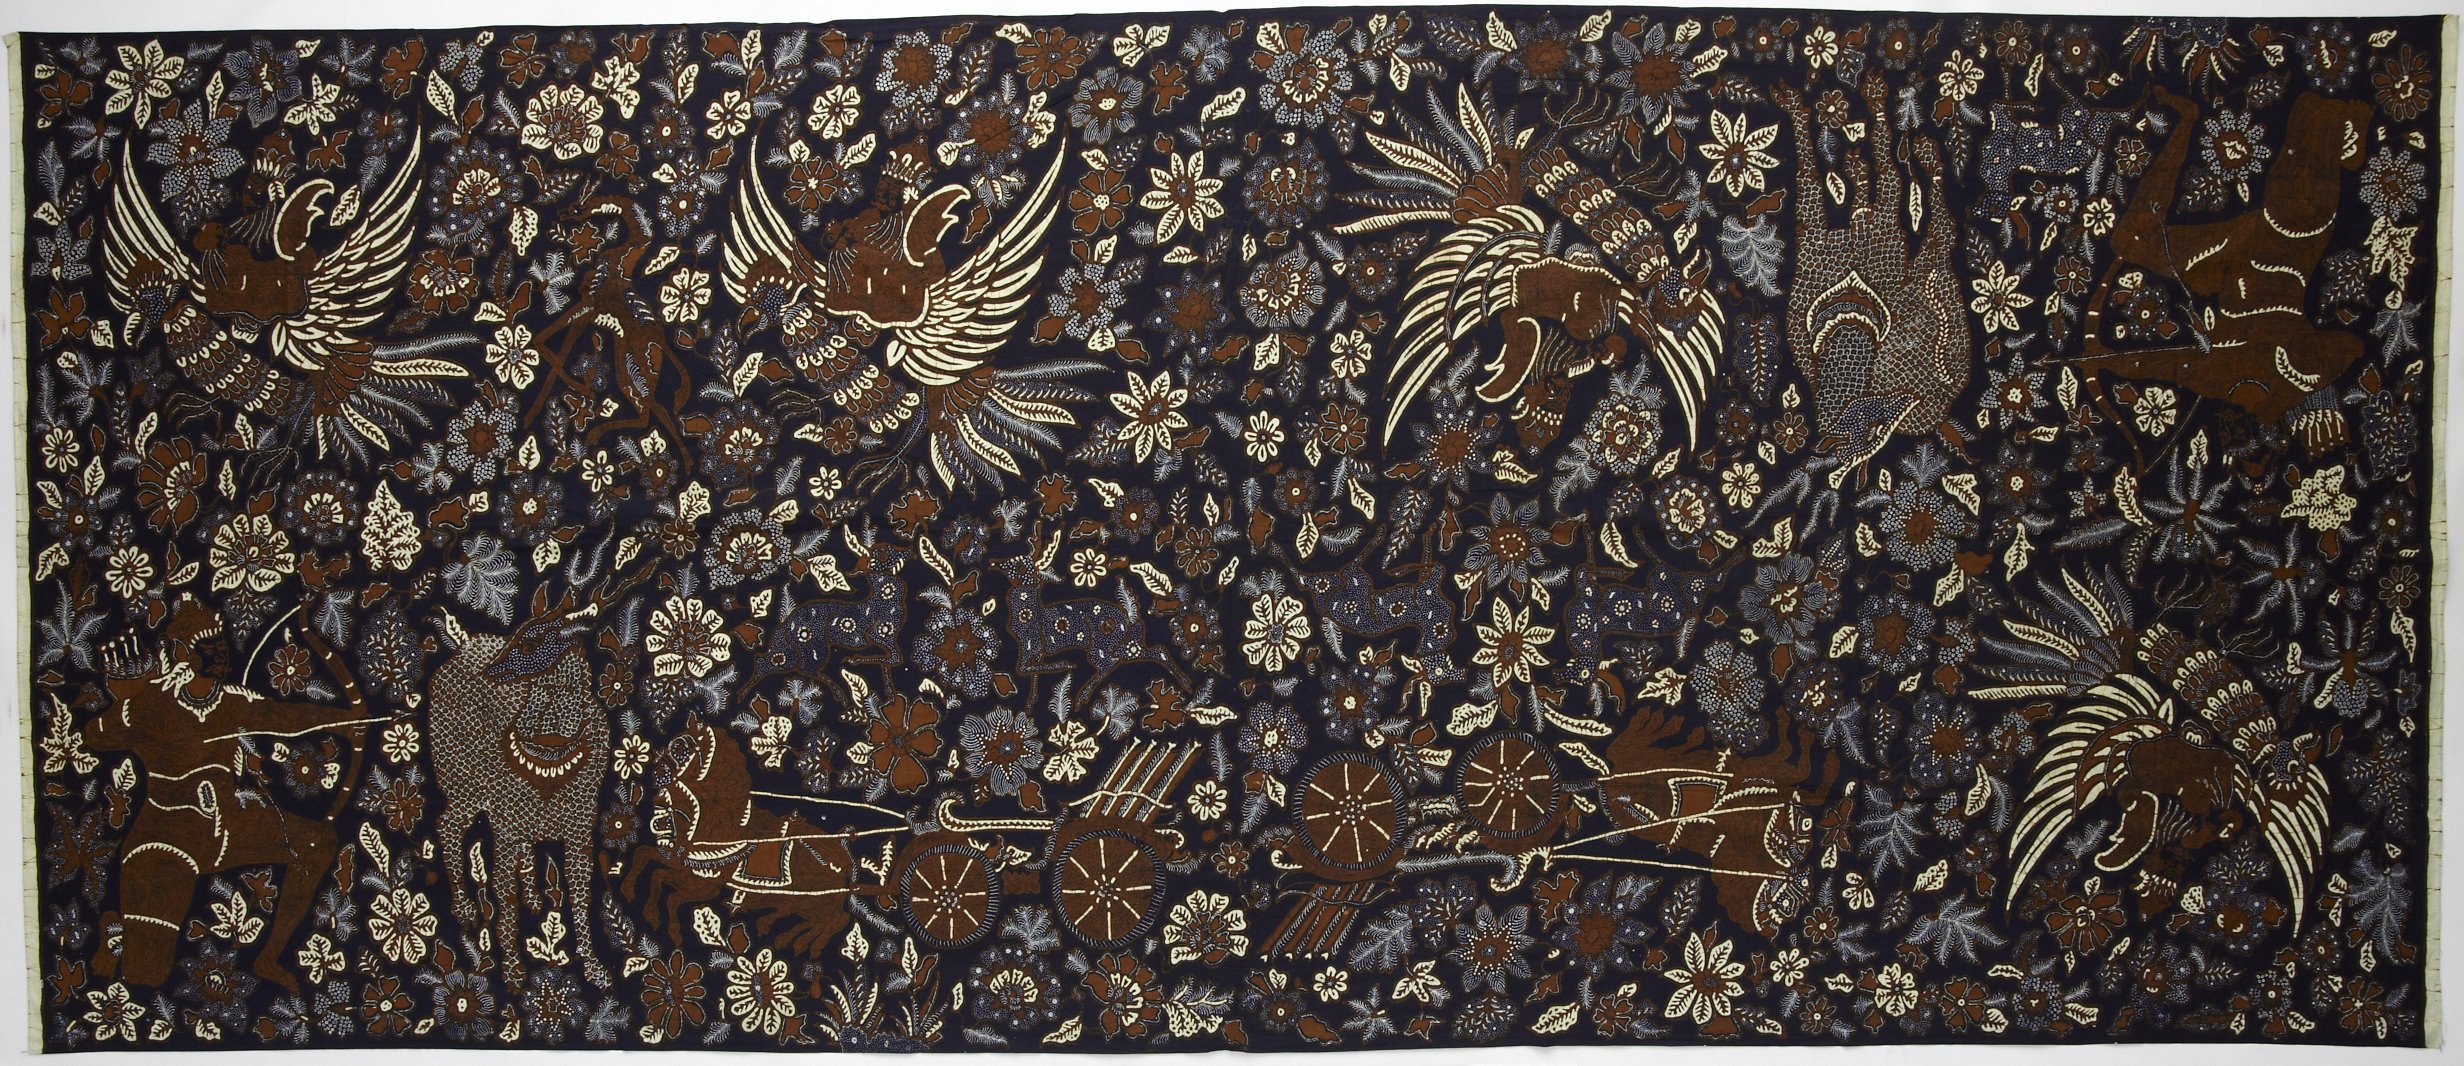 Jogja Collection Vintage Batik Cotton Scarf